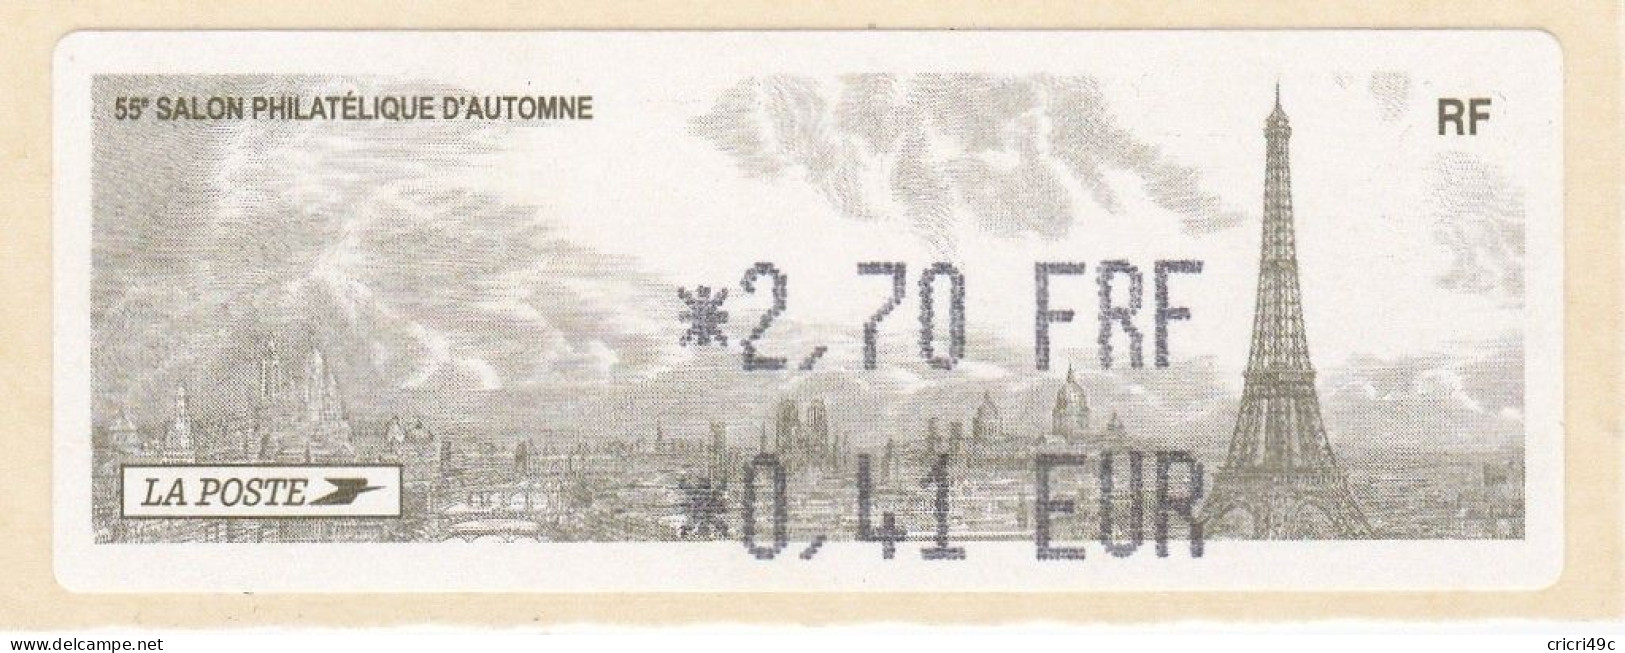 1 ATM LISA. 55è SALON PHILATHELIQUE D"AUTOMNE PARIS  2001. 2.70F  Neufs** - 2010-... Illustrated Franking Labels